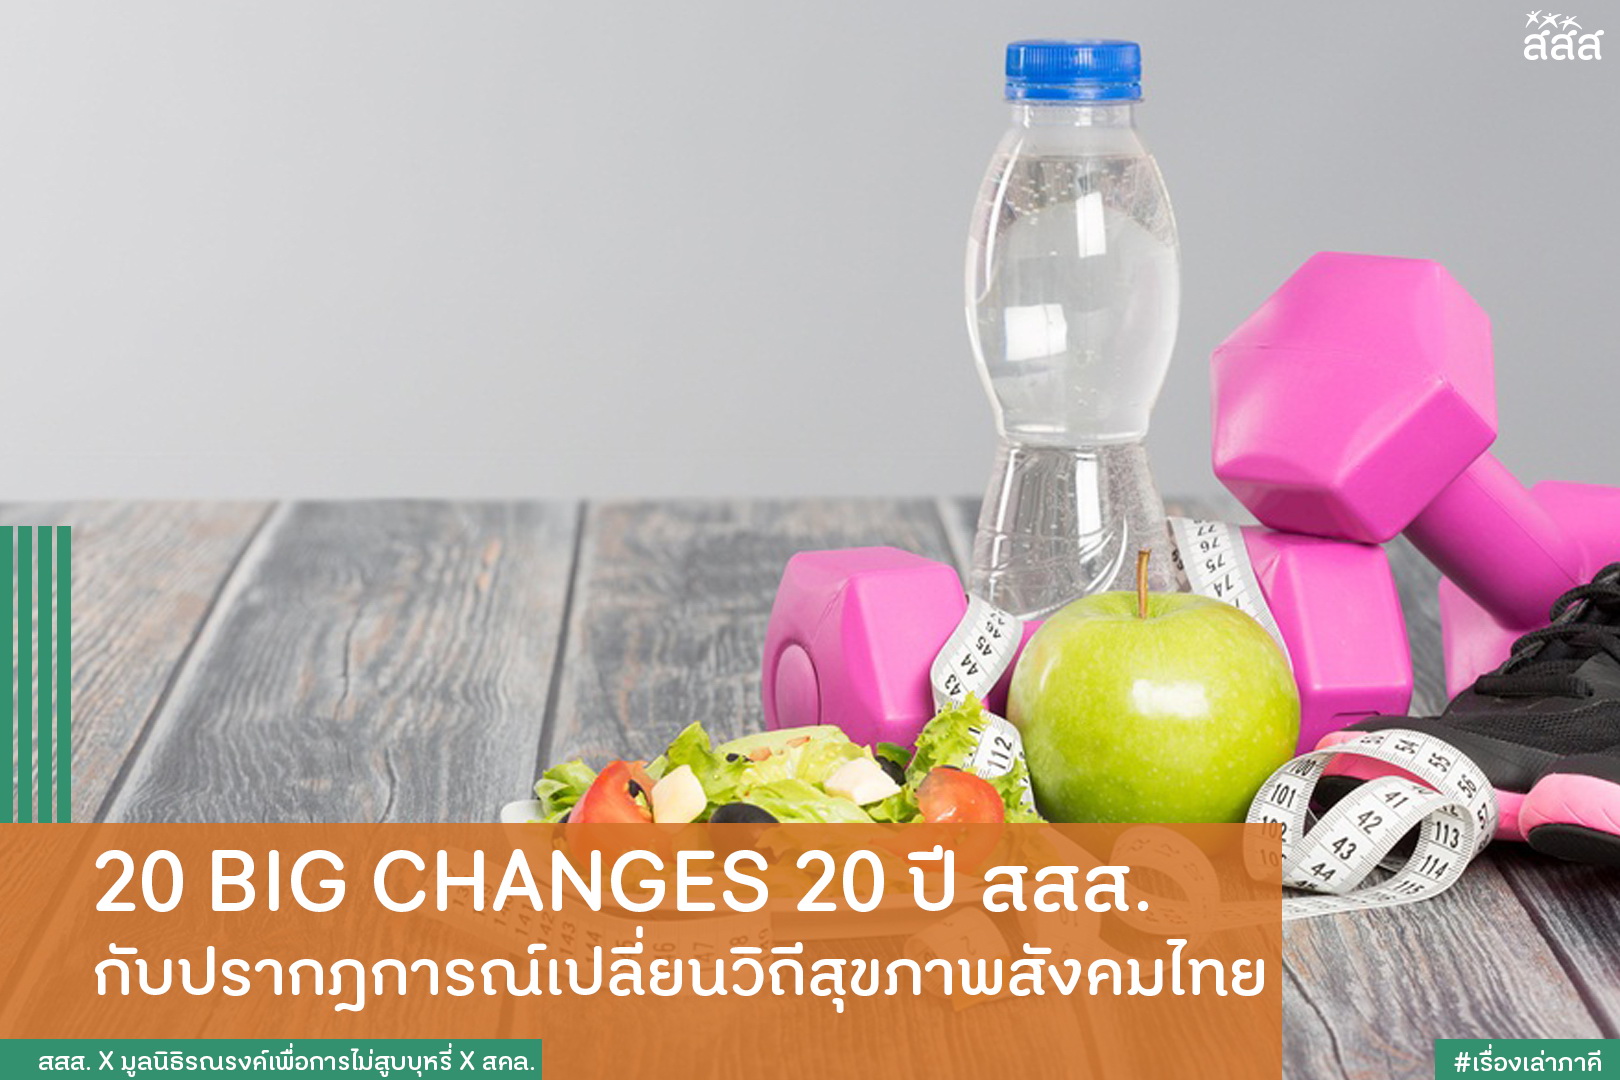 20 BIG CHANGES 20 ปี สสส. กับปรากฎการณ์เปลี่ยนวิถีสุขภาพสังคมไทย thaihealth